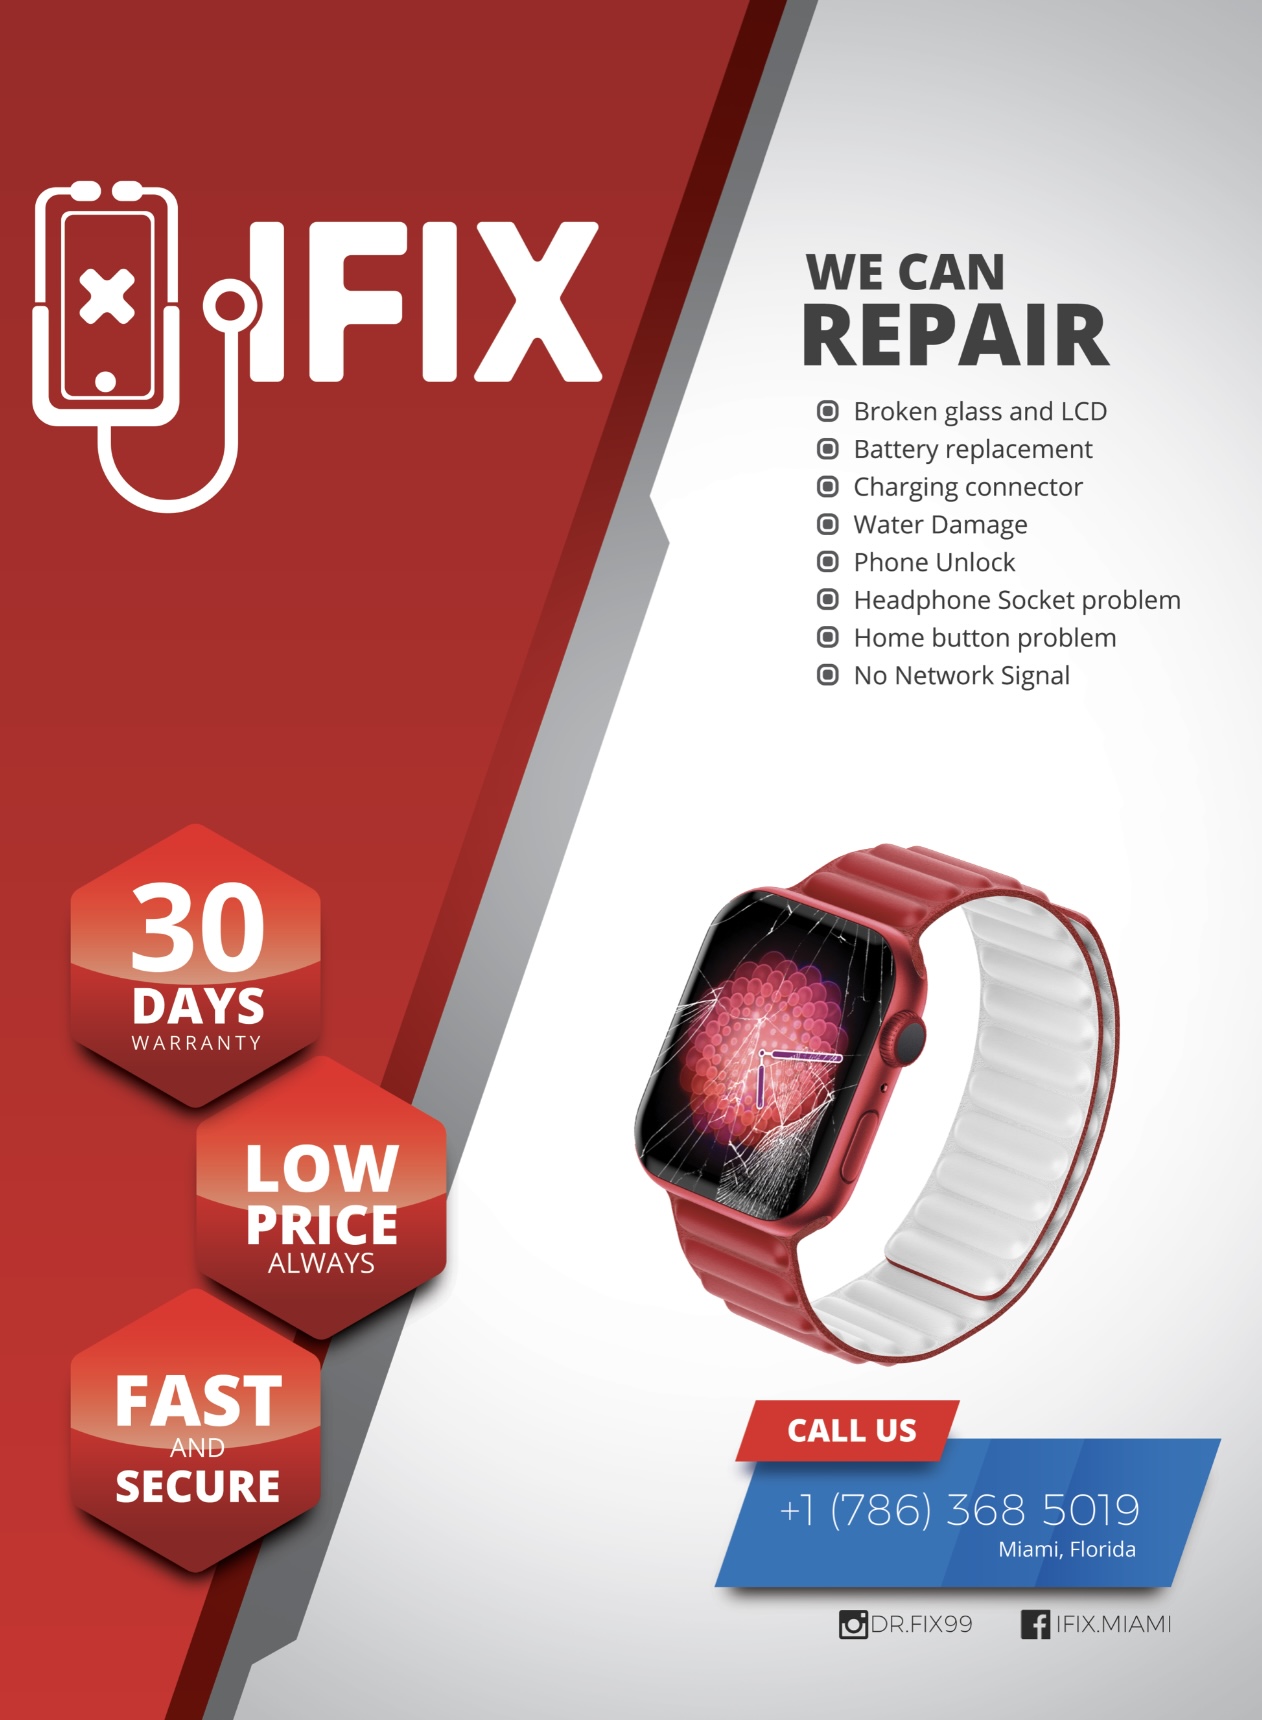 IFIX - iPhone Repair & Smartphone Fast Repair